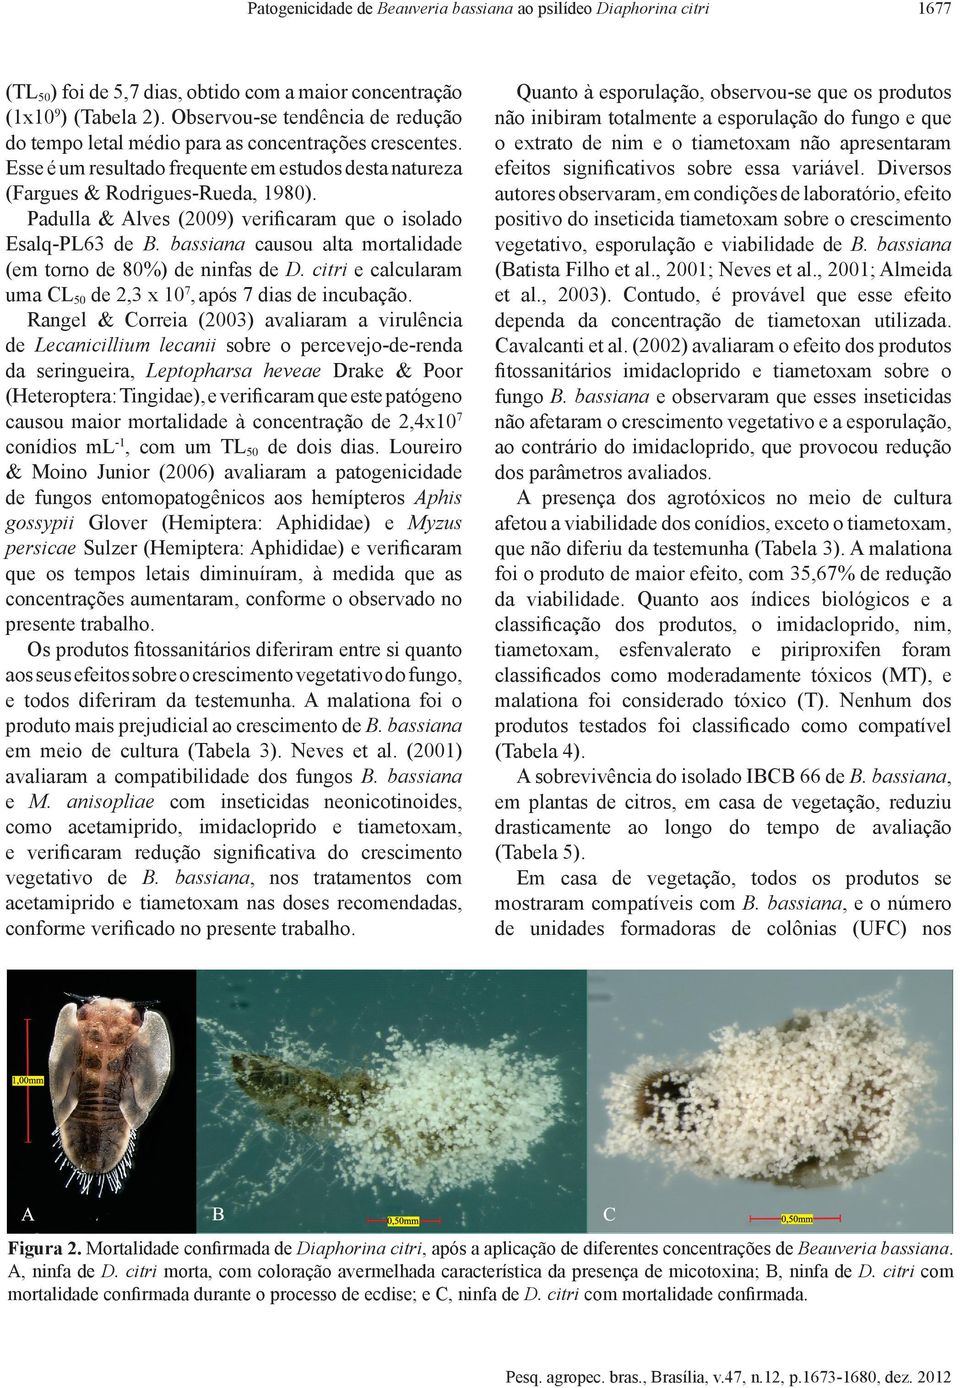 Padulla & Alves (2009) verificaram que o isolado Esalq PL63 de B. bassiana causou alta mortalidade (em torno de 80%) de ninfas de D. citri e calcularam uma CL50 de 2,3 x 107, após 7 dias de incubação.